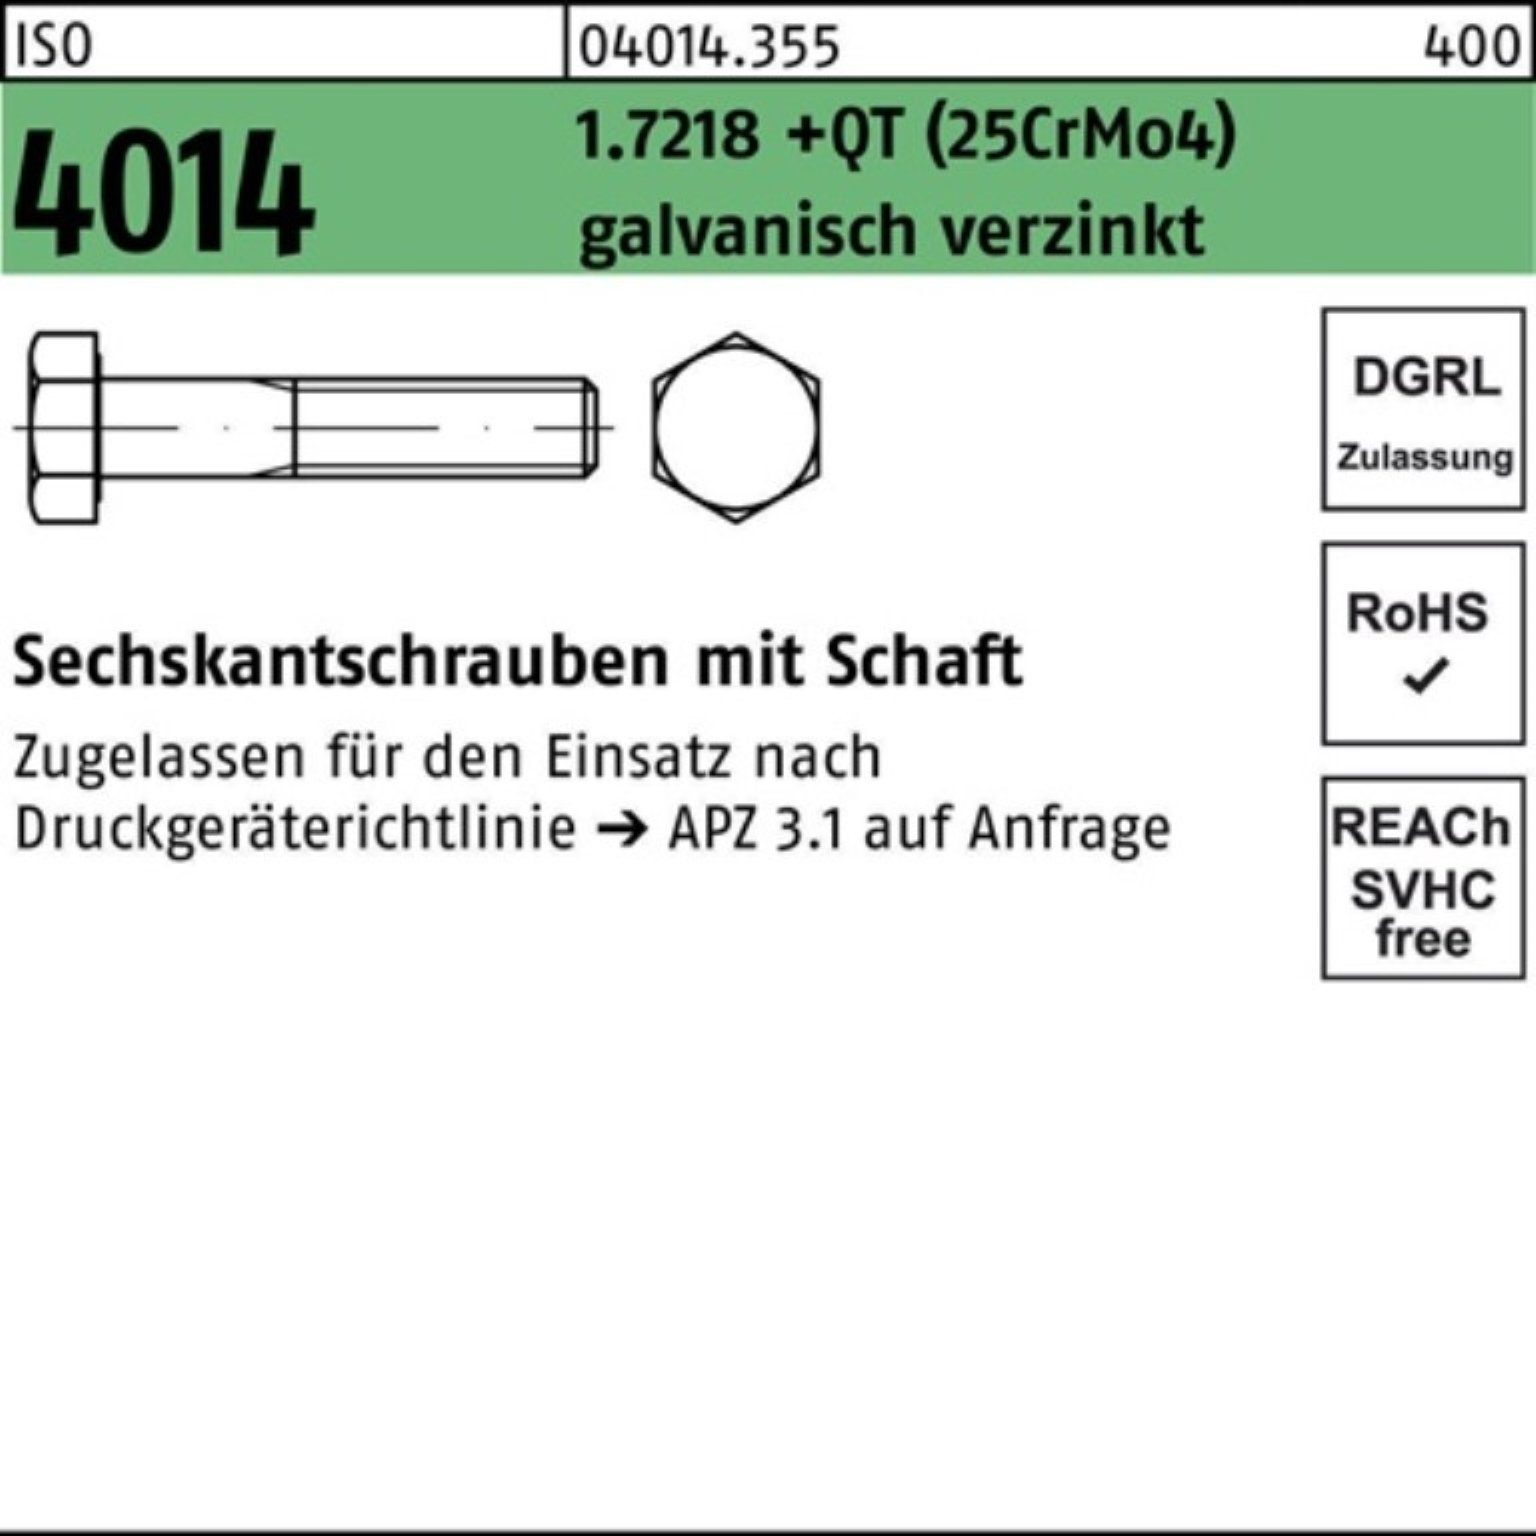 M12x60 Pack Bufab Sechskantschraube Sechskantschraube (25CrMo 1.7218 Schaft +QT ISO 4014 100er